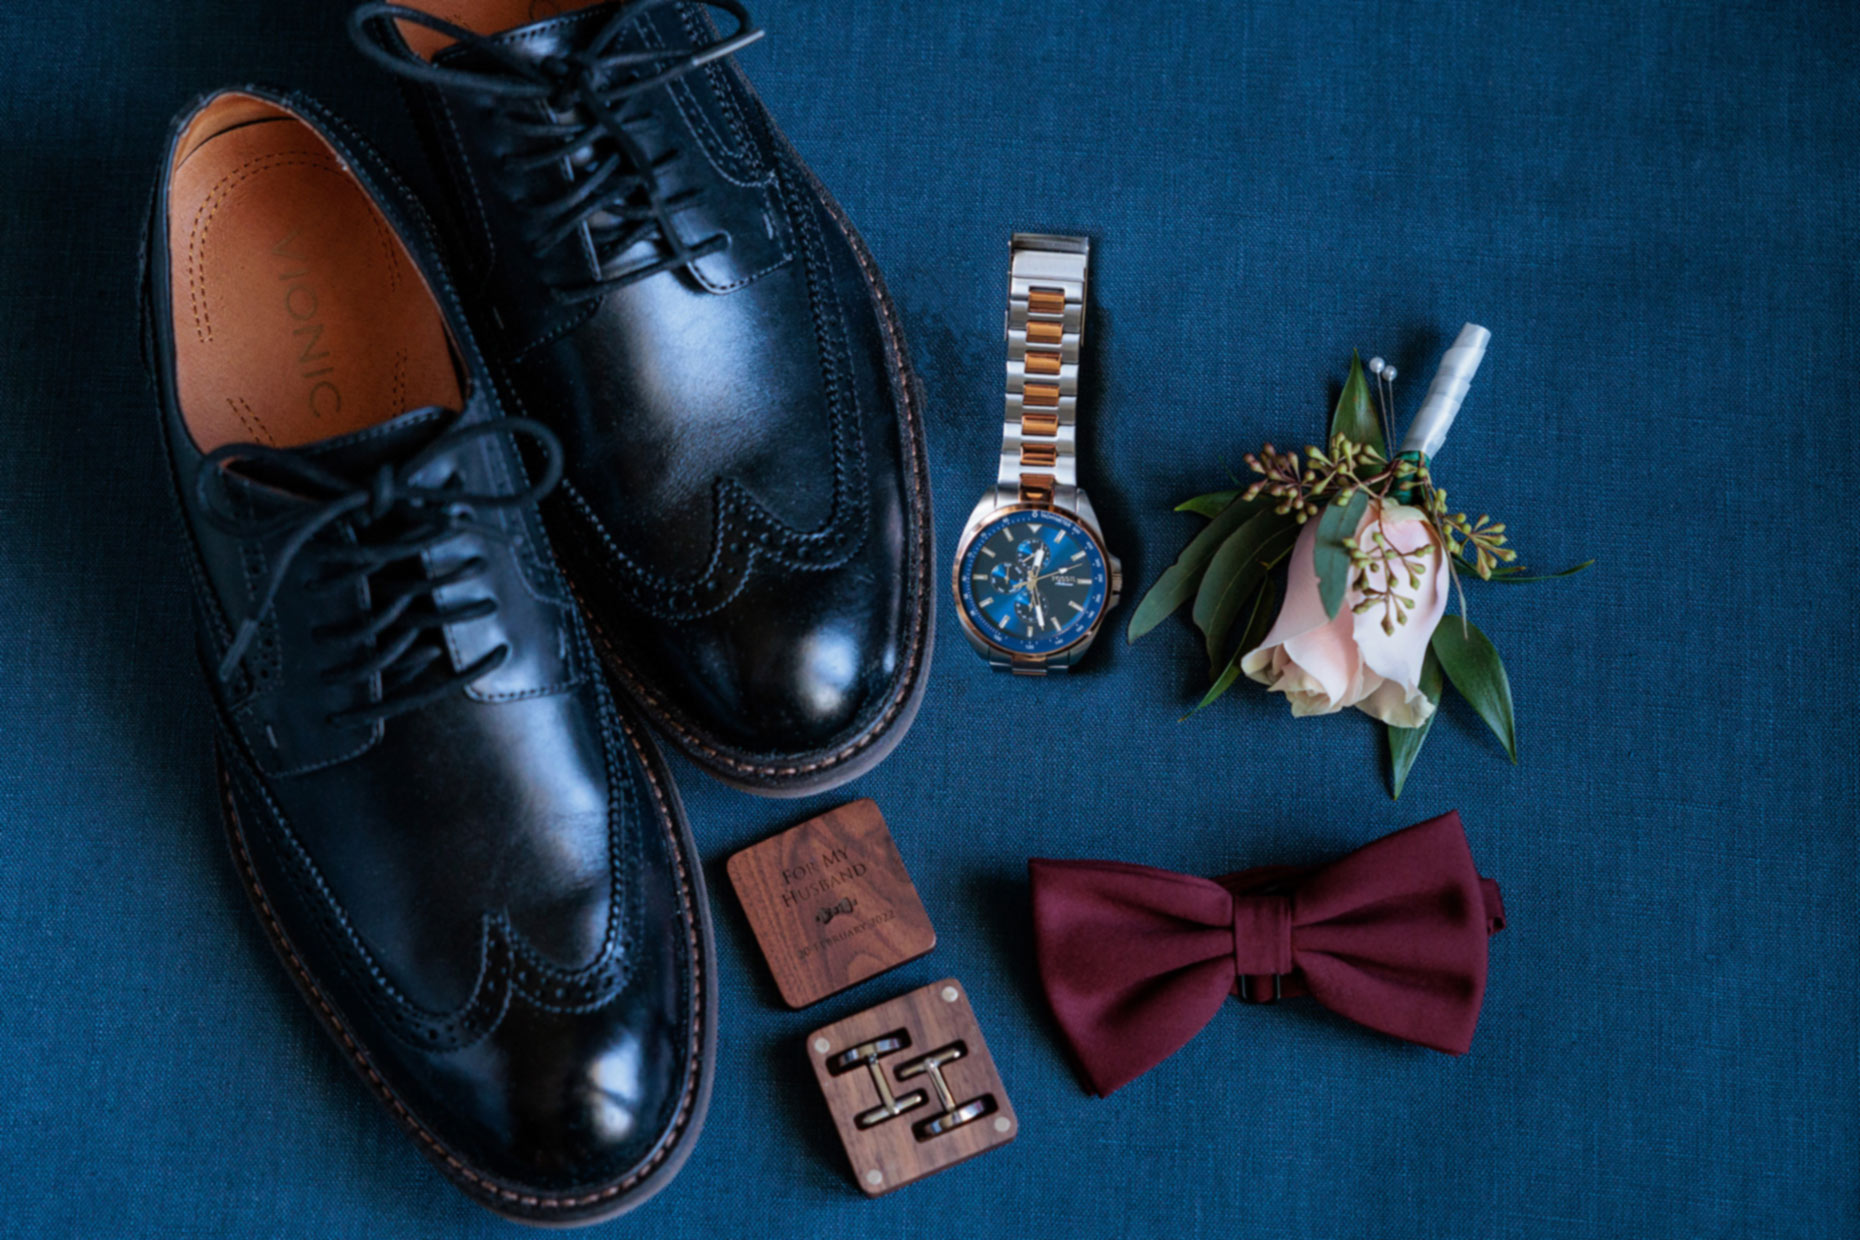 Groom's accessories in Maroon & Navy Blue